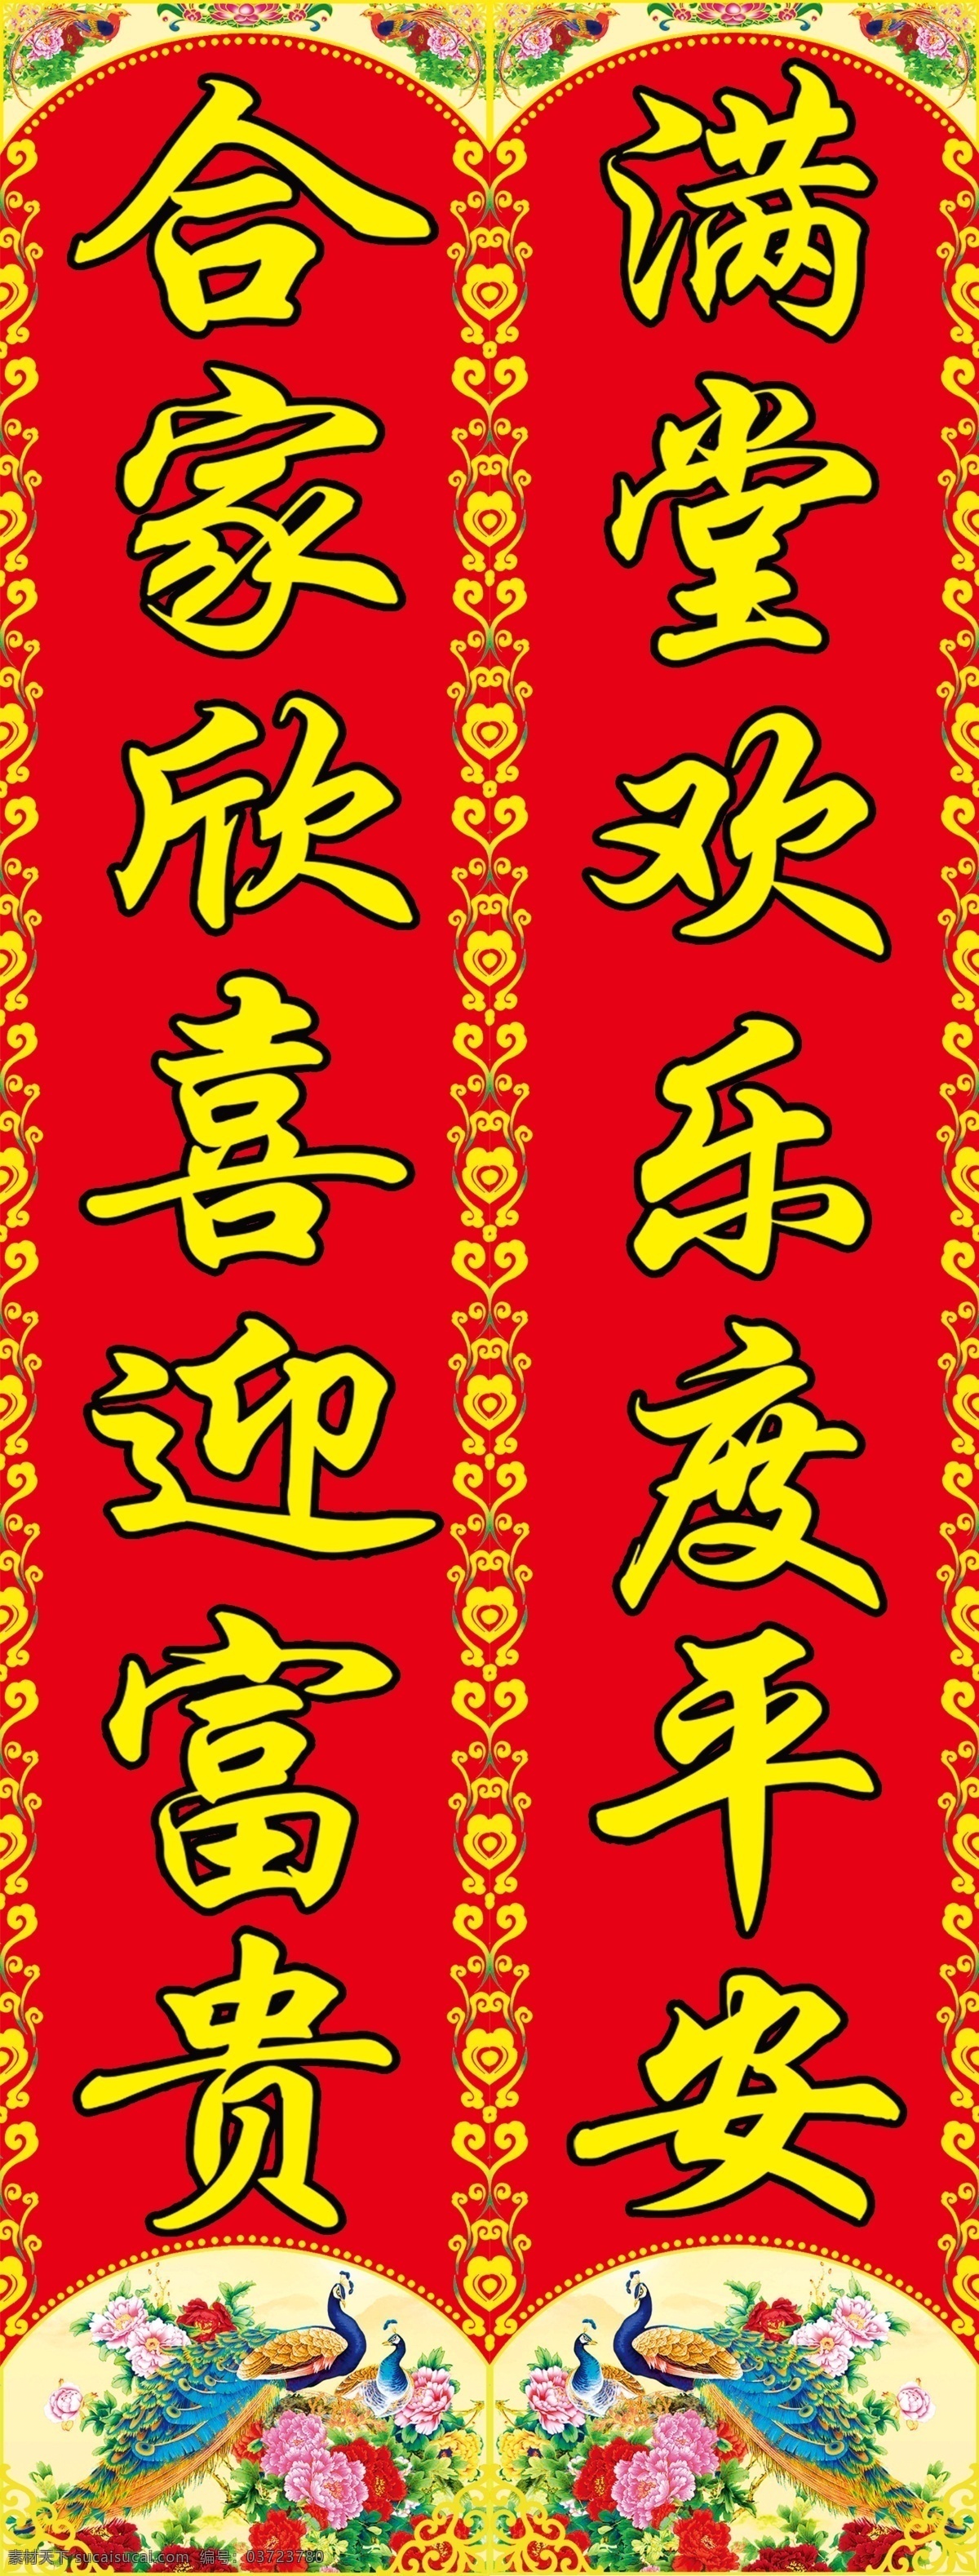 孔雀 对联 传统文化 福字 过年 红色 花纹 家文化 年画 年货 幸福 喜庆 挥春 利是钱 年文化 原创设计 其他原创设计